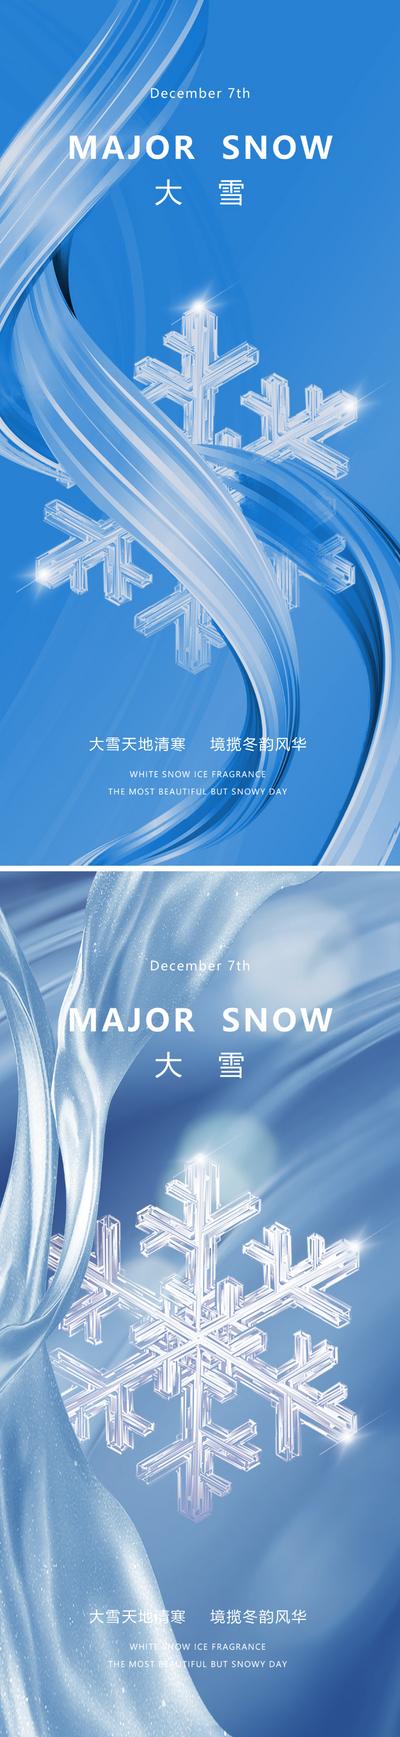 南门网 广告 海报 地产 大雪 节气 质感 现代 简约 雪花 简洁 闪光 金属 丝带 线条 水晶 唯美 意境 蓝色